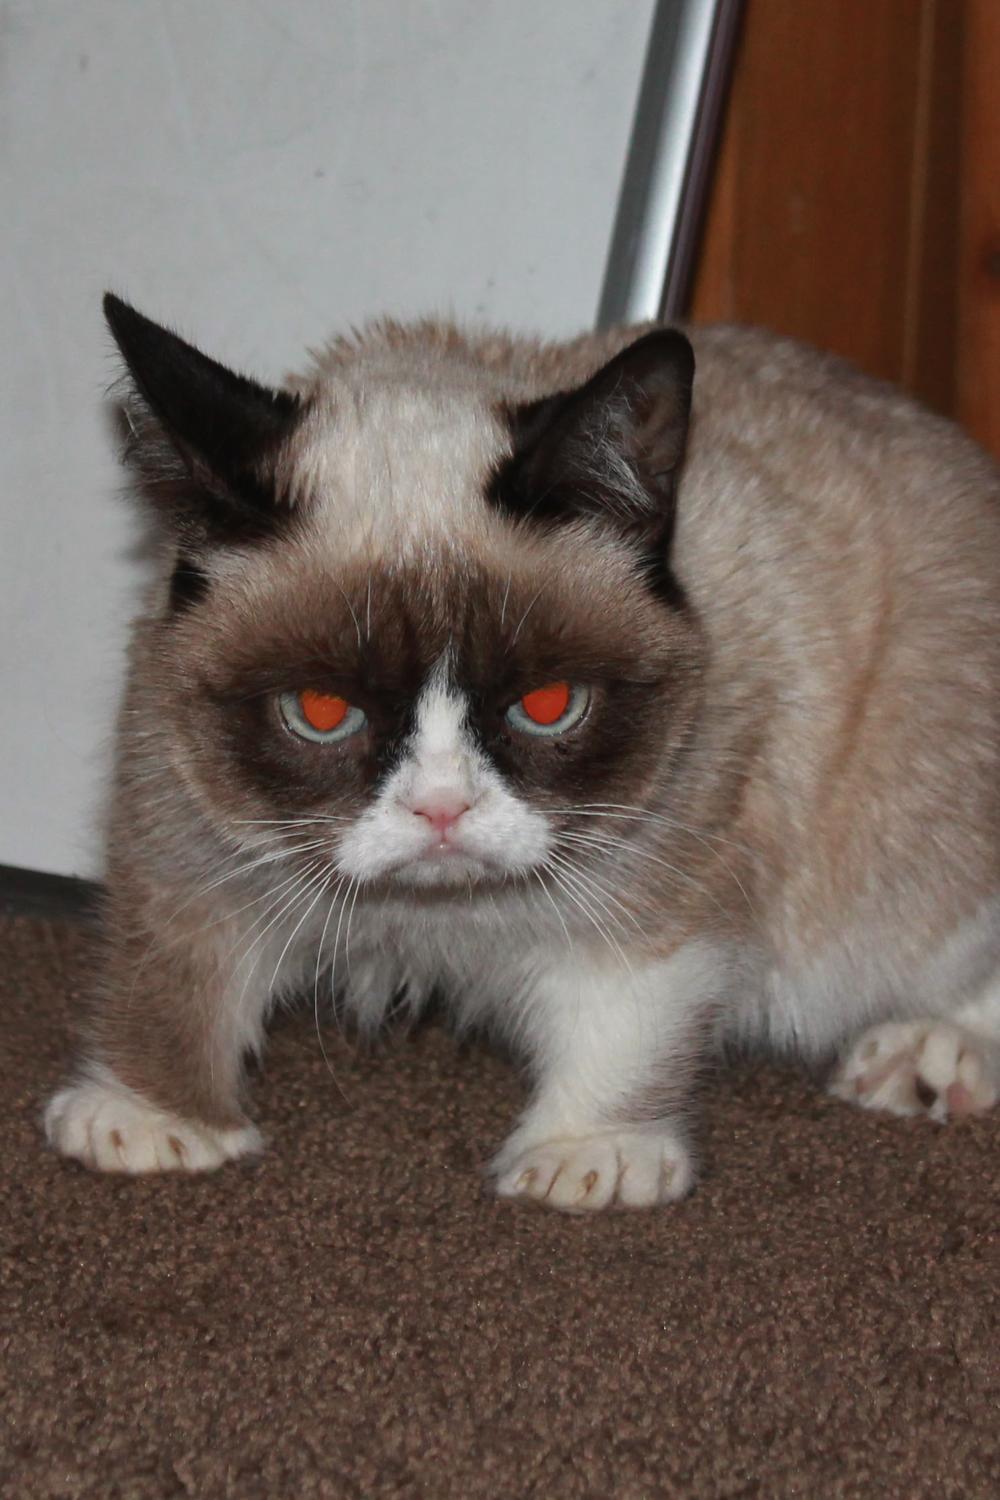 tardthegrumpycat:  The Daily Grump | December 27, 2012 Grumpy Cat tees at Hot Topic!